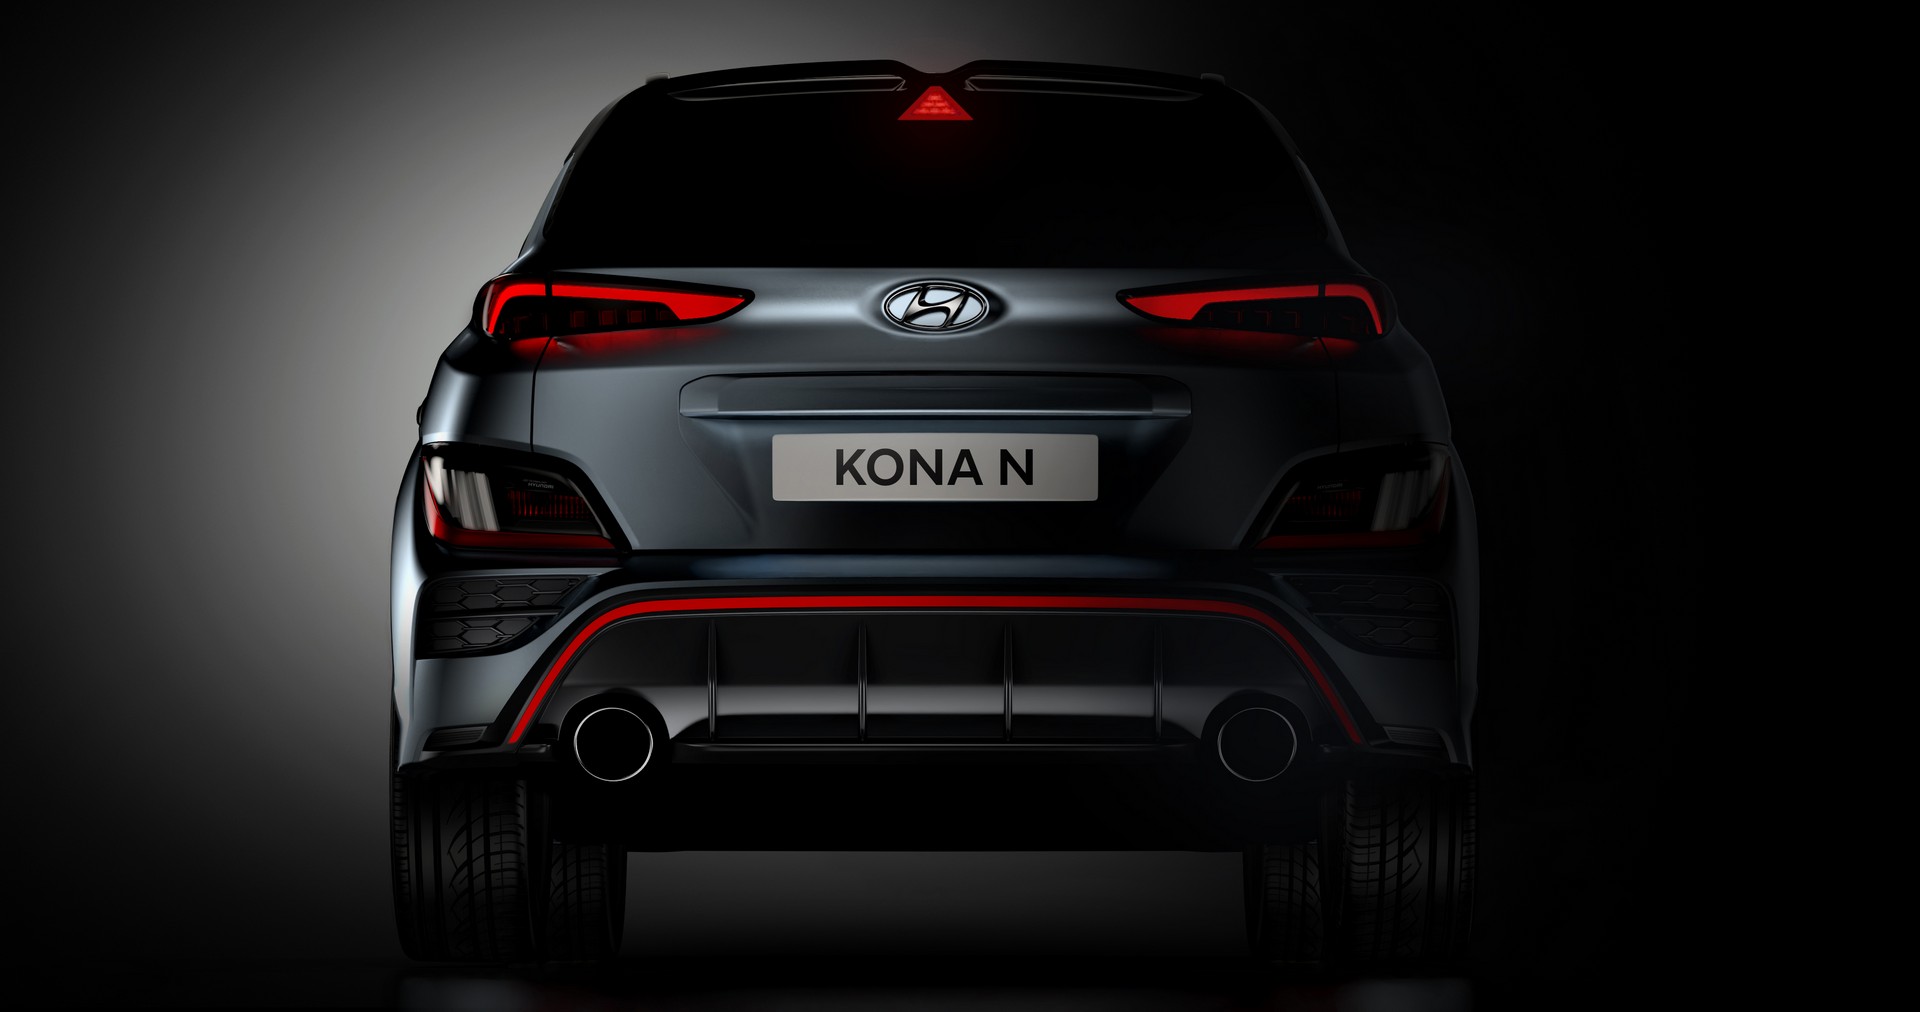 Hyundai Kona N hiệu suất cao tung thông số vượt trội mọi thứ của Seltos, EcoSport - Ảnh 1.